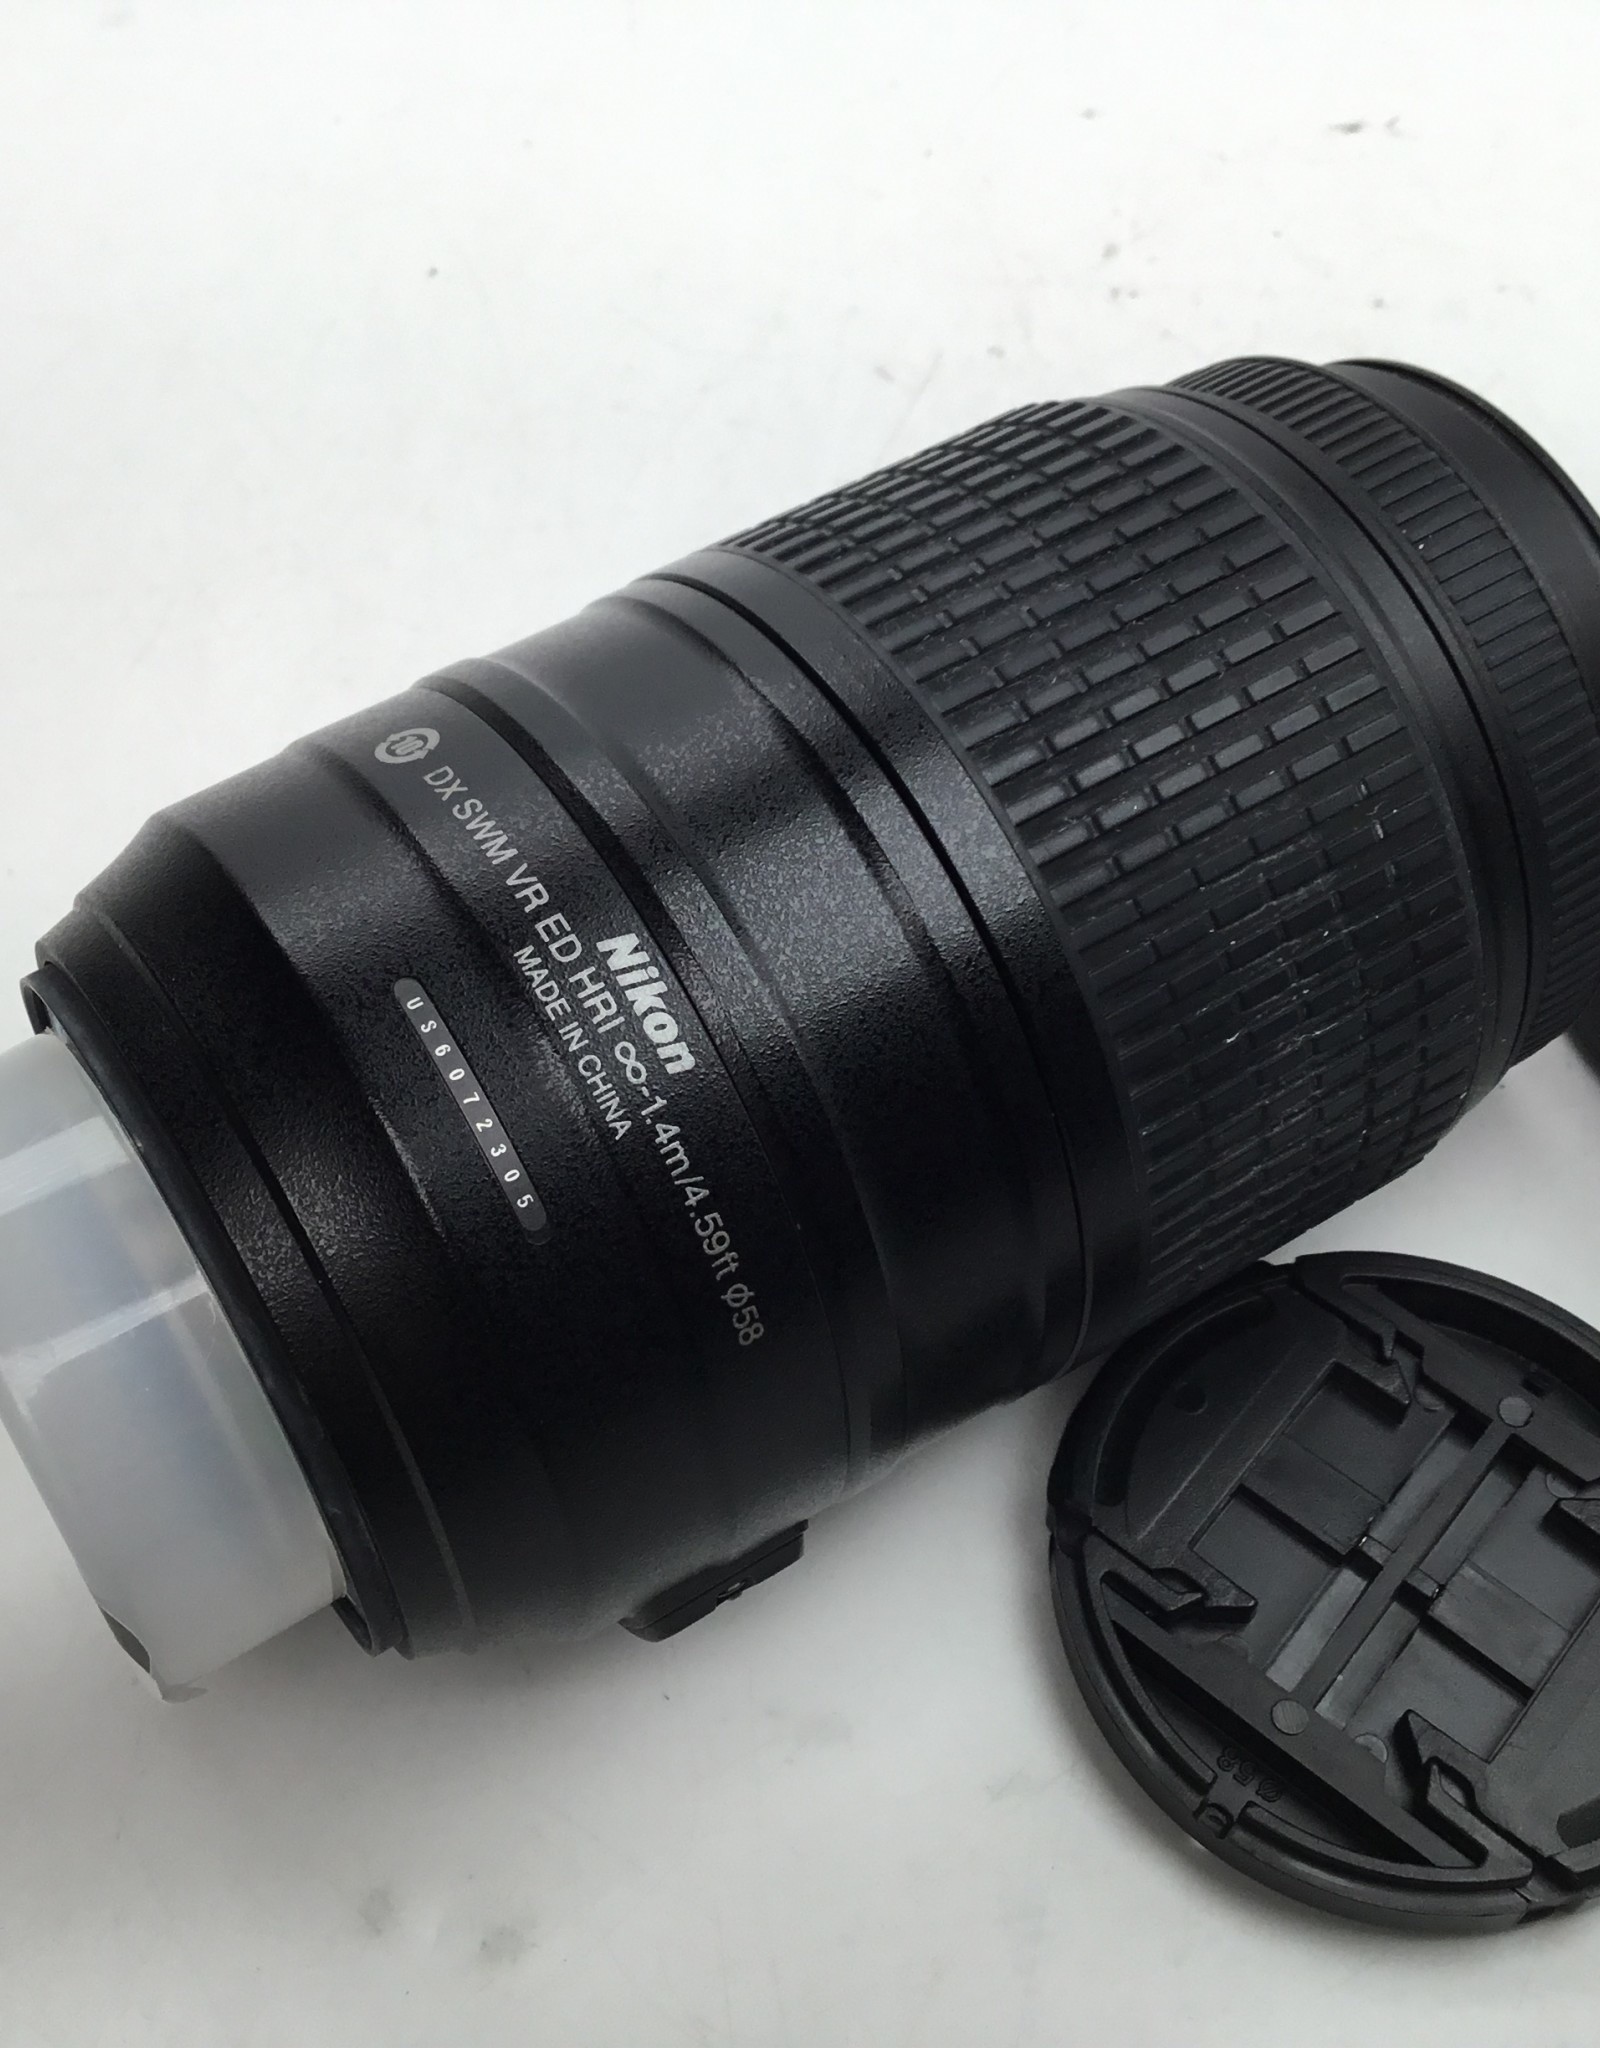 NIKON Nikon AF-S Nikkor 55-300mm f4.5-5.6G VR Lens Used Good